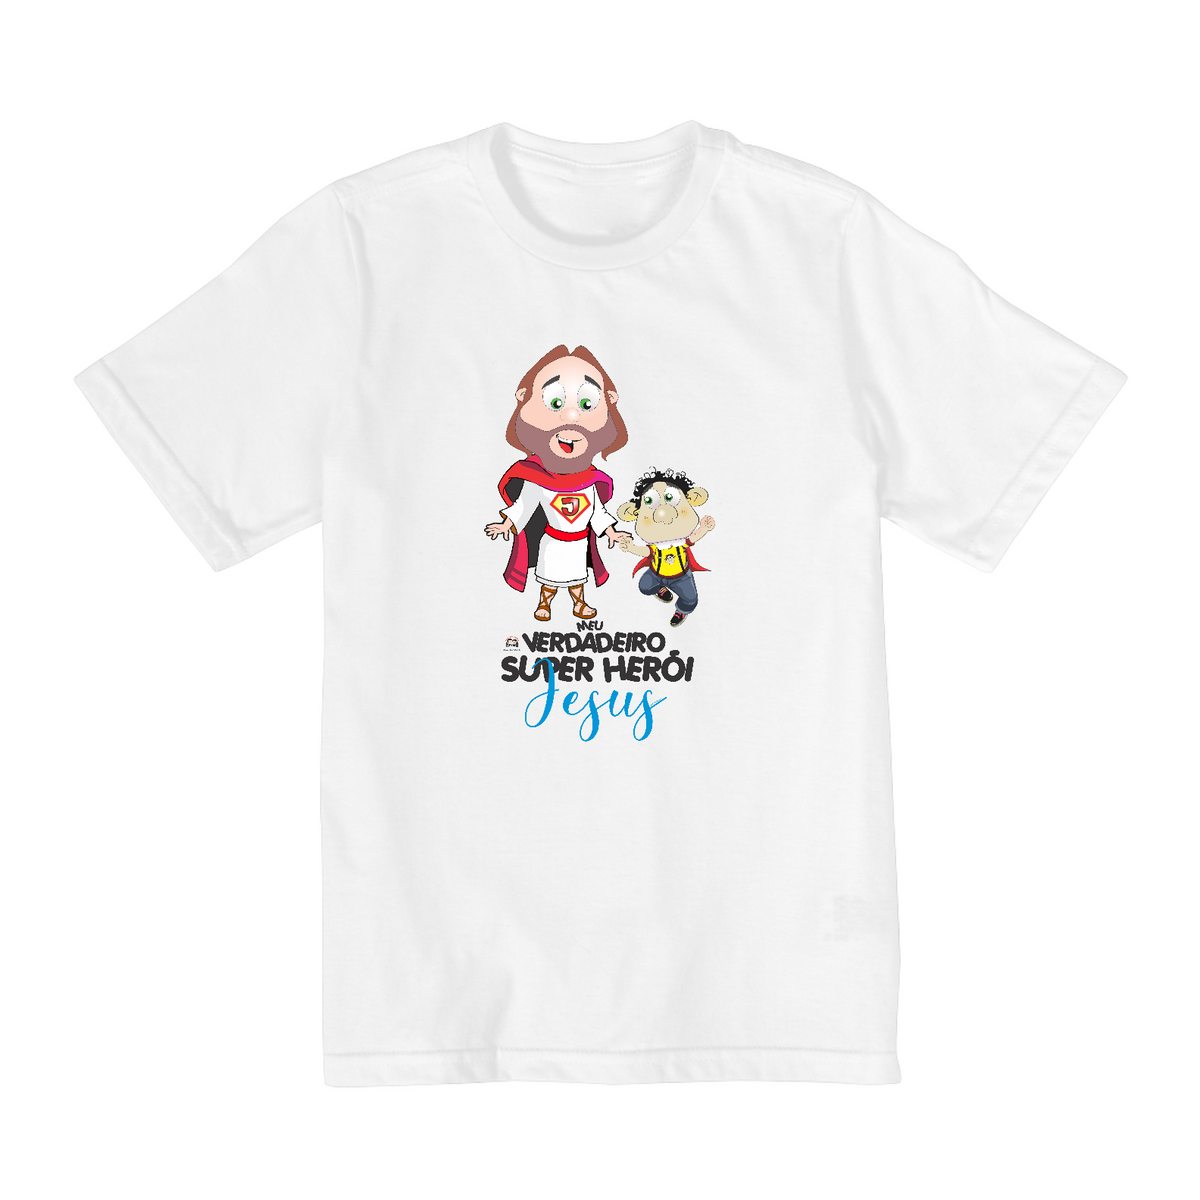 Nome do produto: Camisa Infantil Ozé Jesus meu herói 2